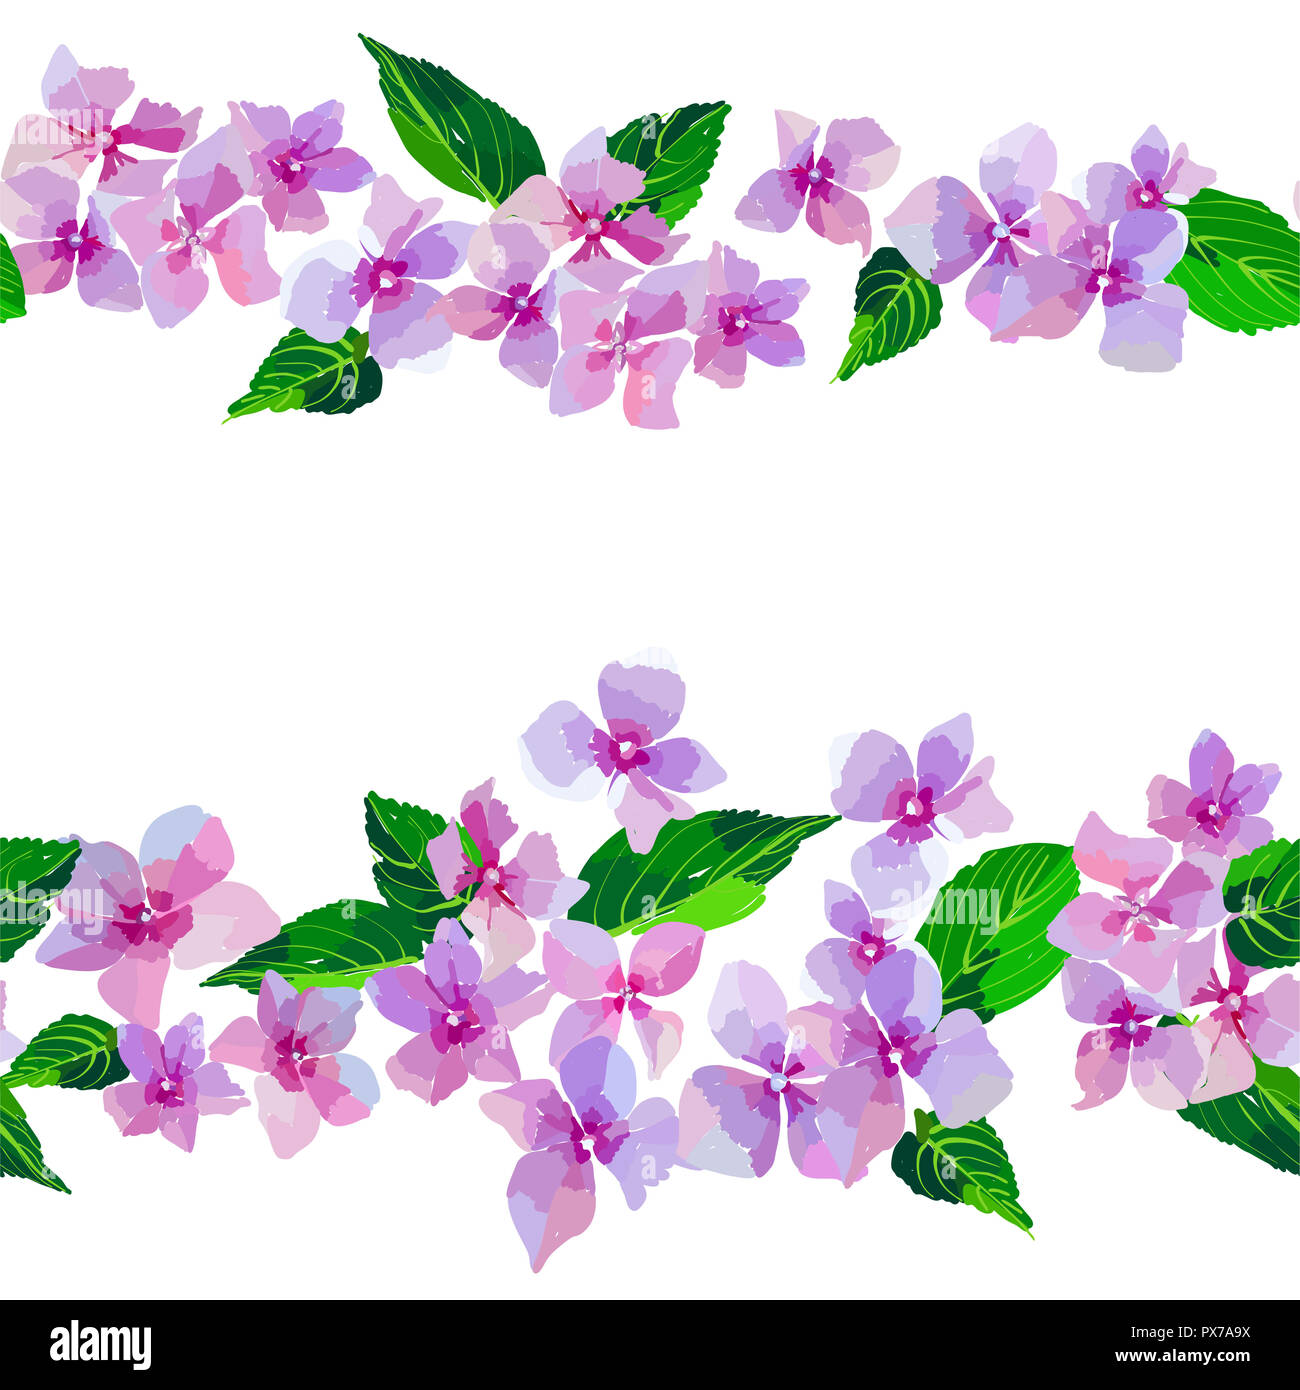 Fleurs sauvages lilas modèle homogène. Les petites fleurs et les feuilles à la main. Vector illustration pour l'industrie textile, l'emballage, le scrapbooking. Banque D'Images